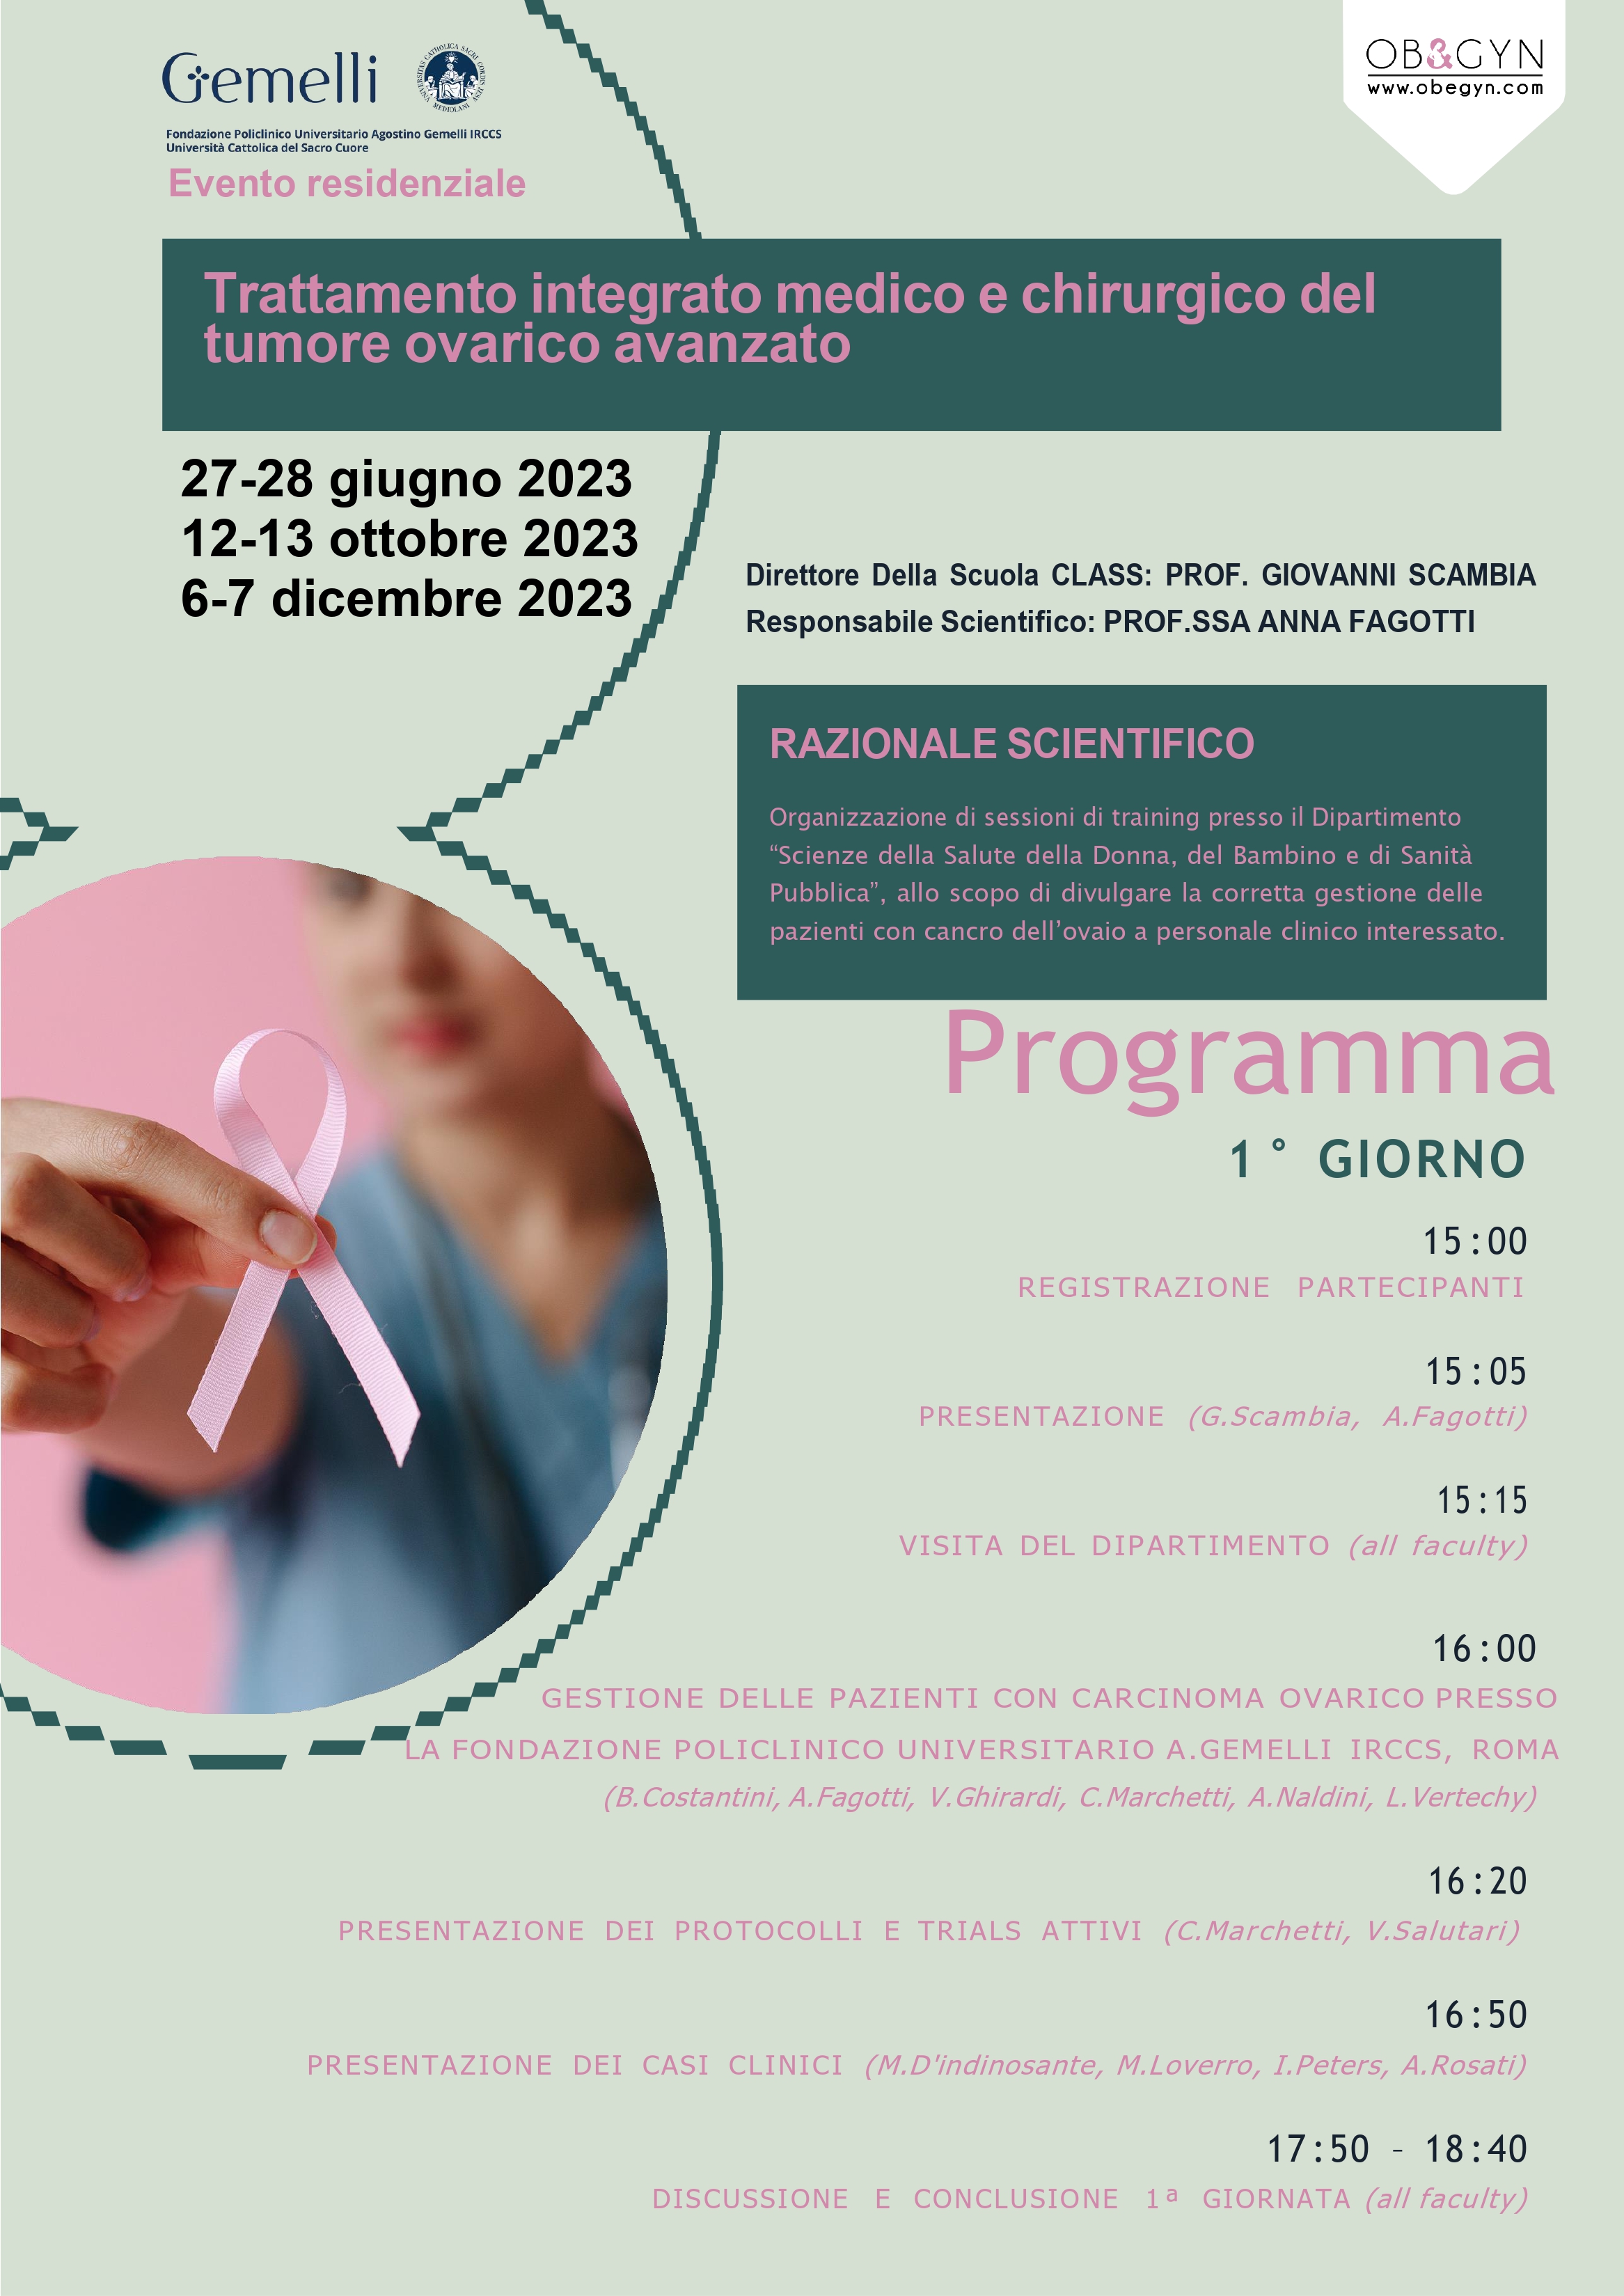 Programma Trattamento integrato medico e chirurgico del tumore ovarico avanzato - dicembre 2023